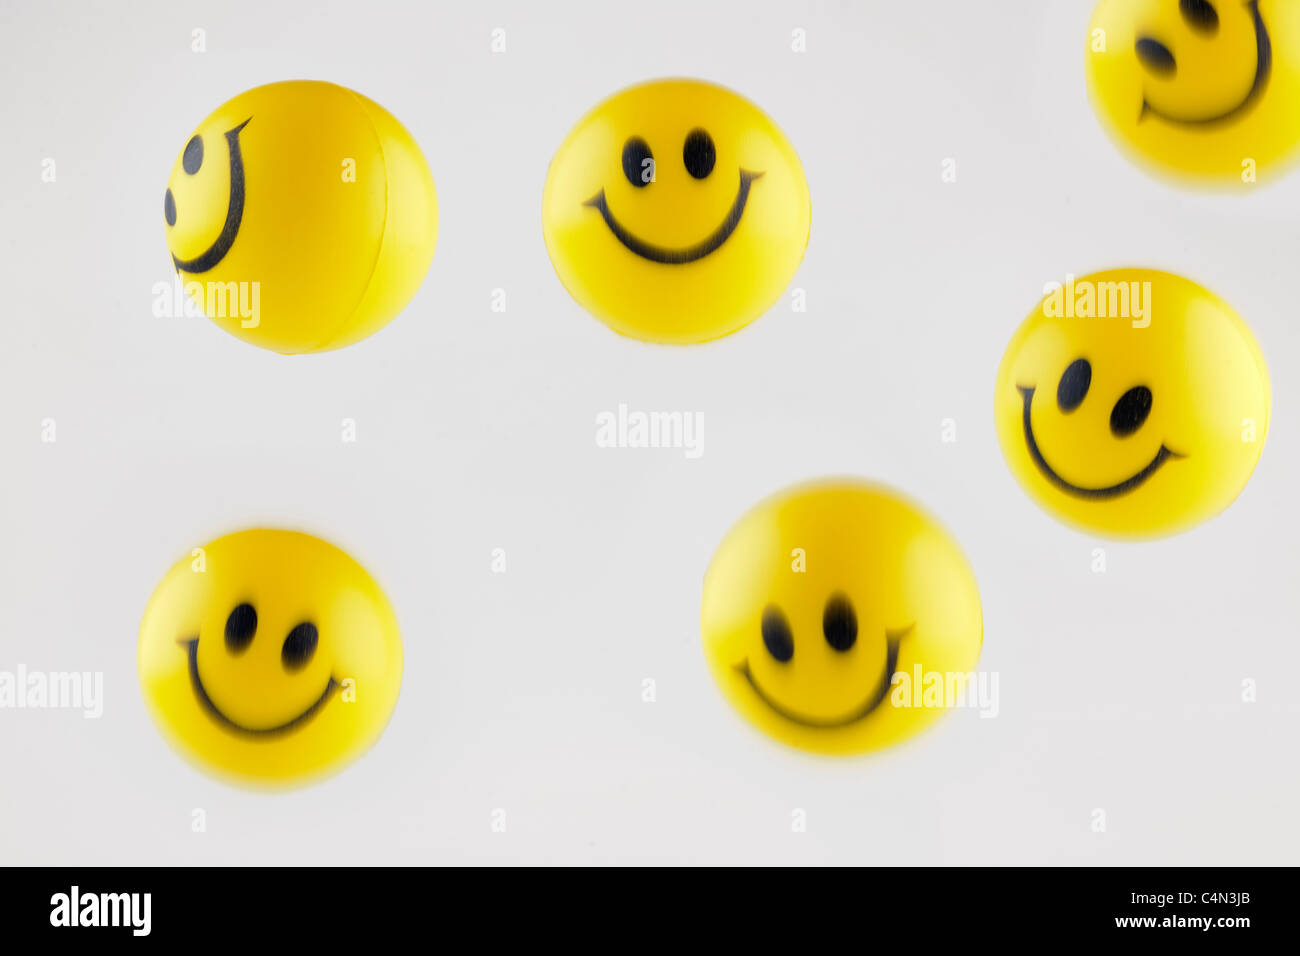 Bouncing yellow smiley face balls Stock Photo